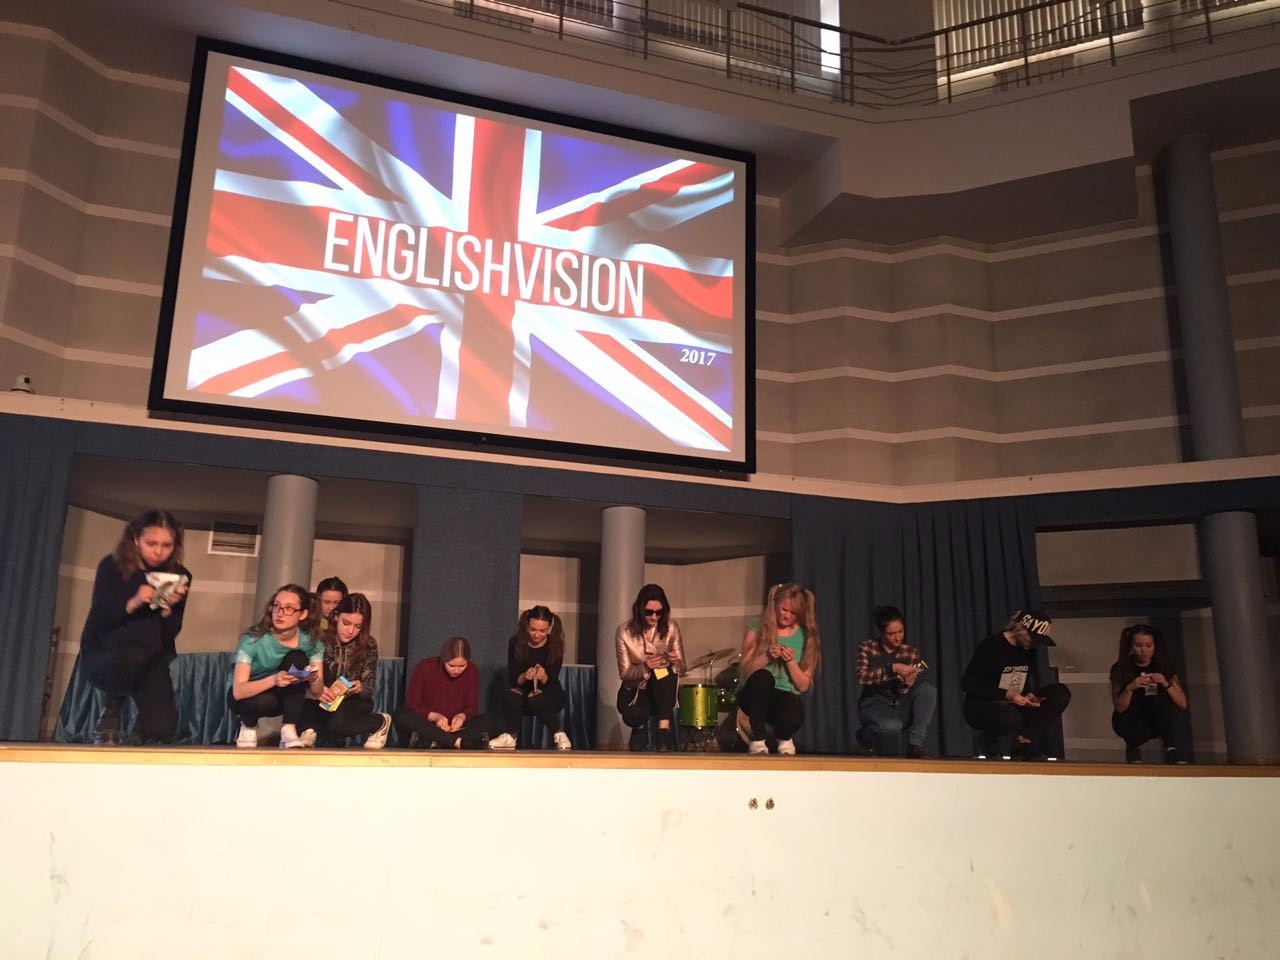 Englishvision 2017